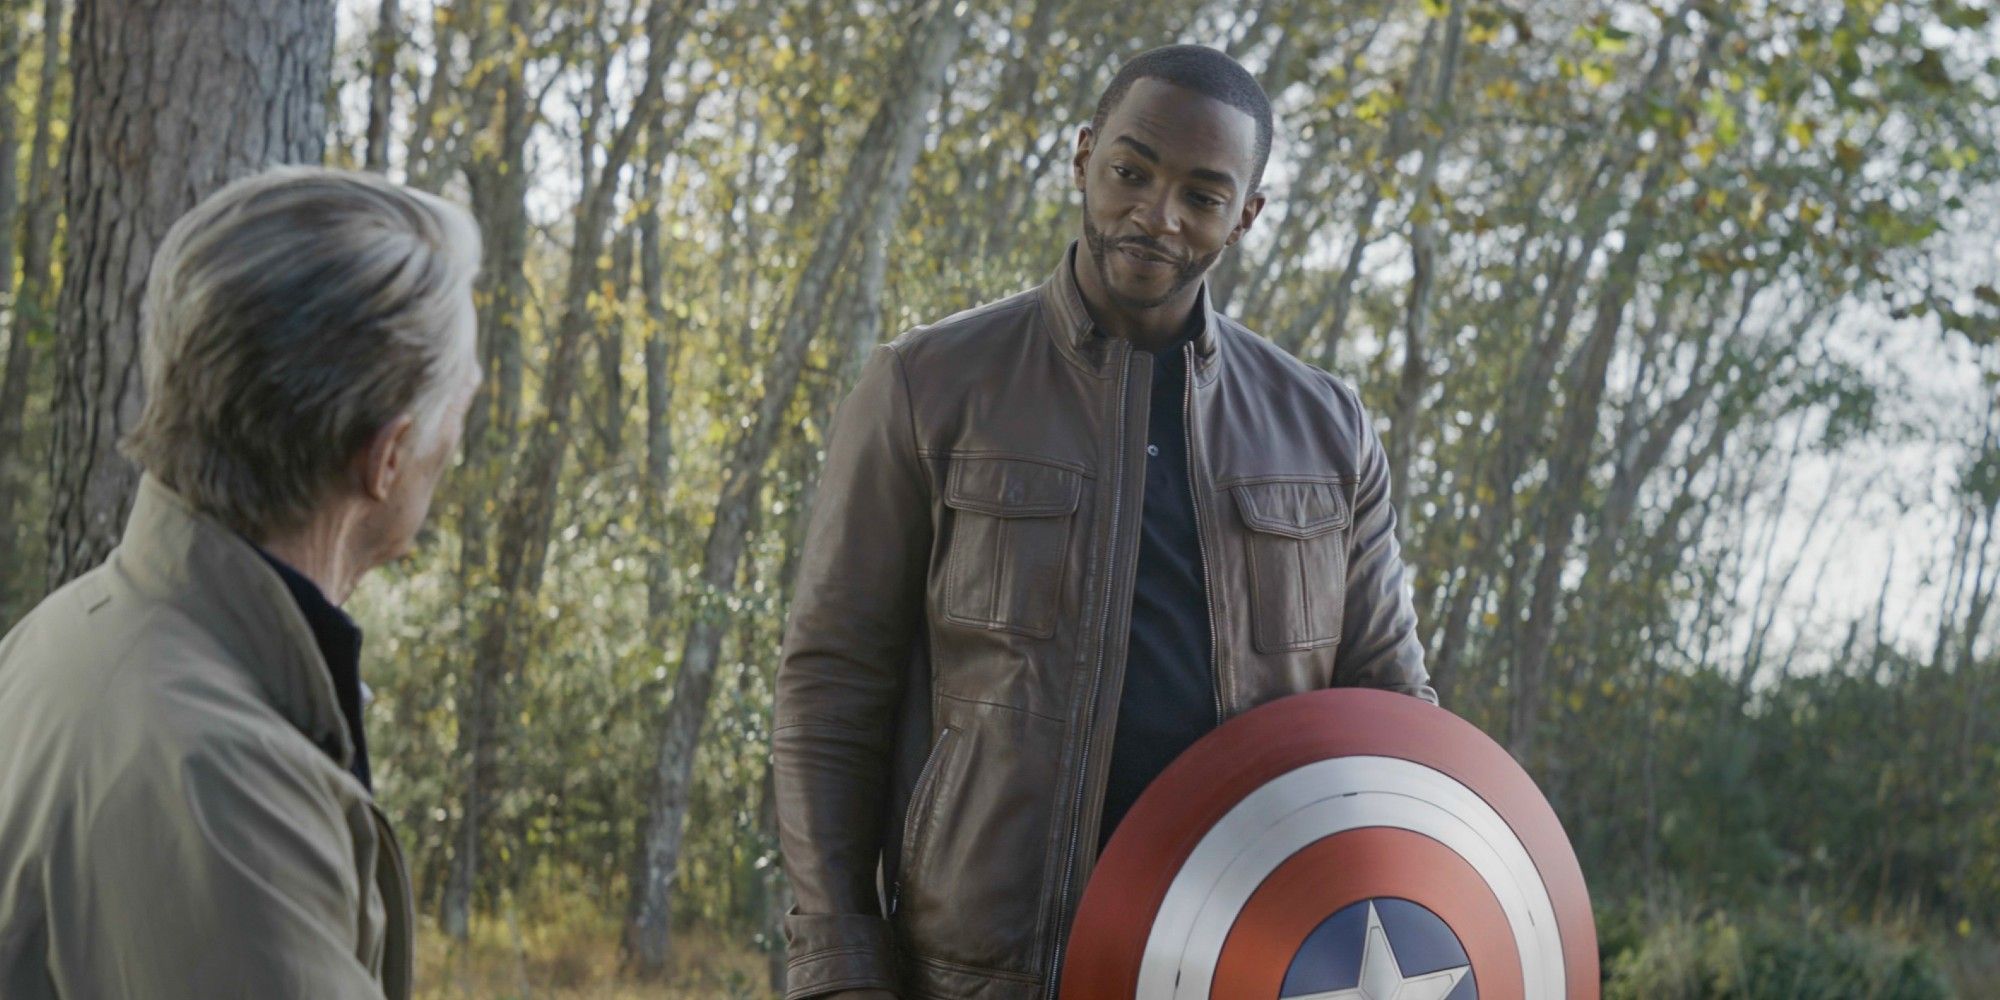 Steve Rogers gives Sam Wilson the Captain America shield in Avengers: Endgame